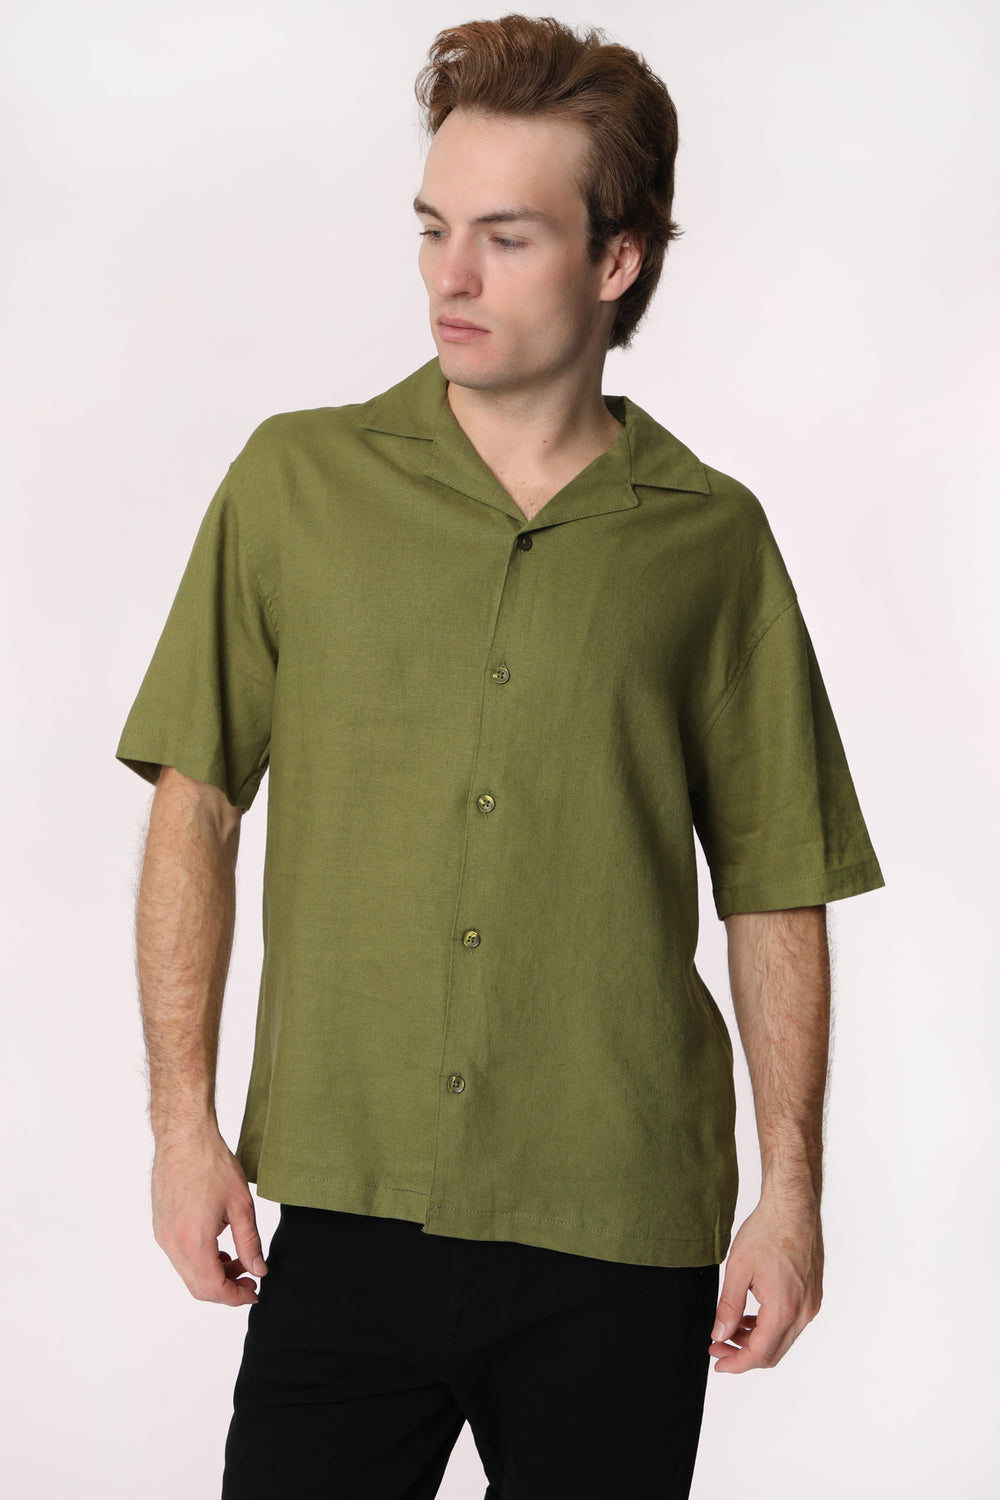 West49 Mens Linen Button-Up Dark Green